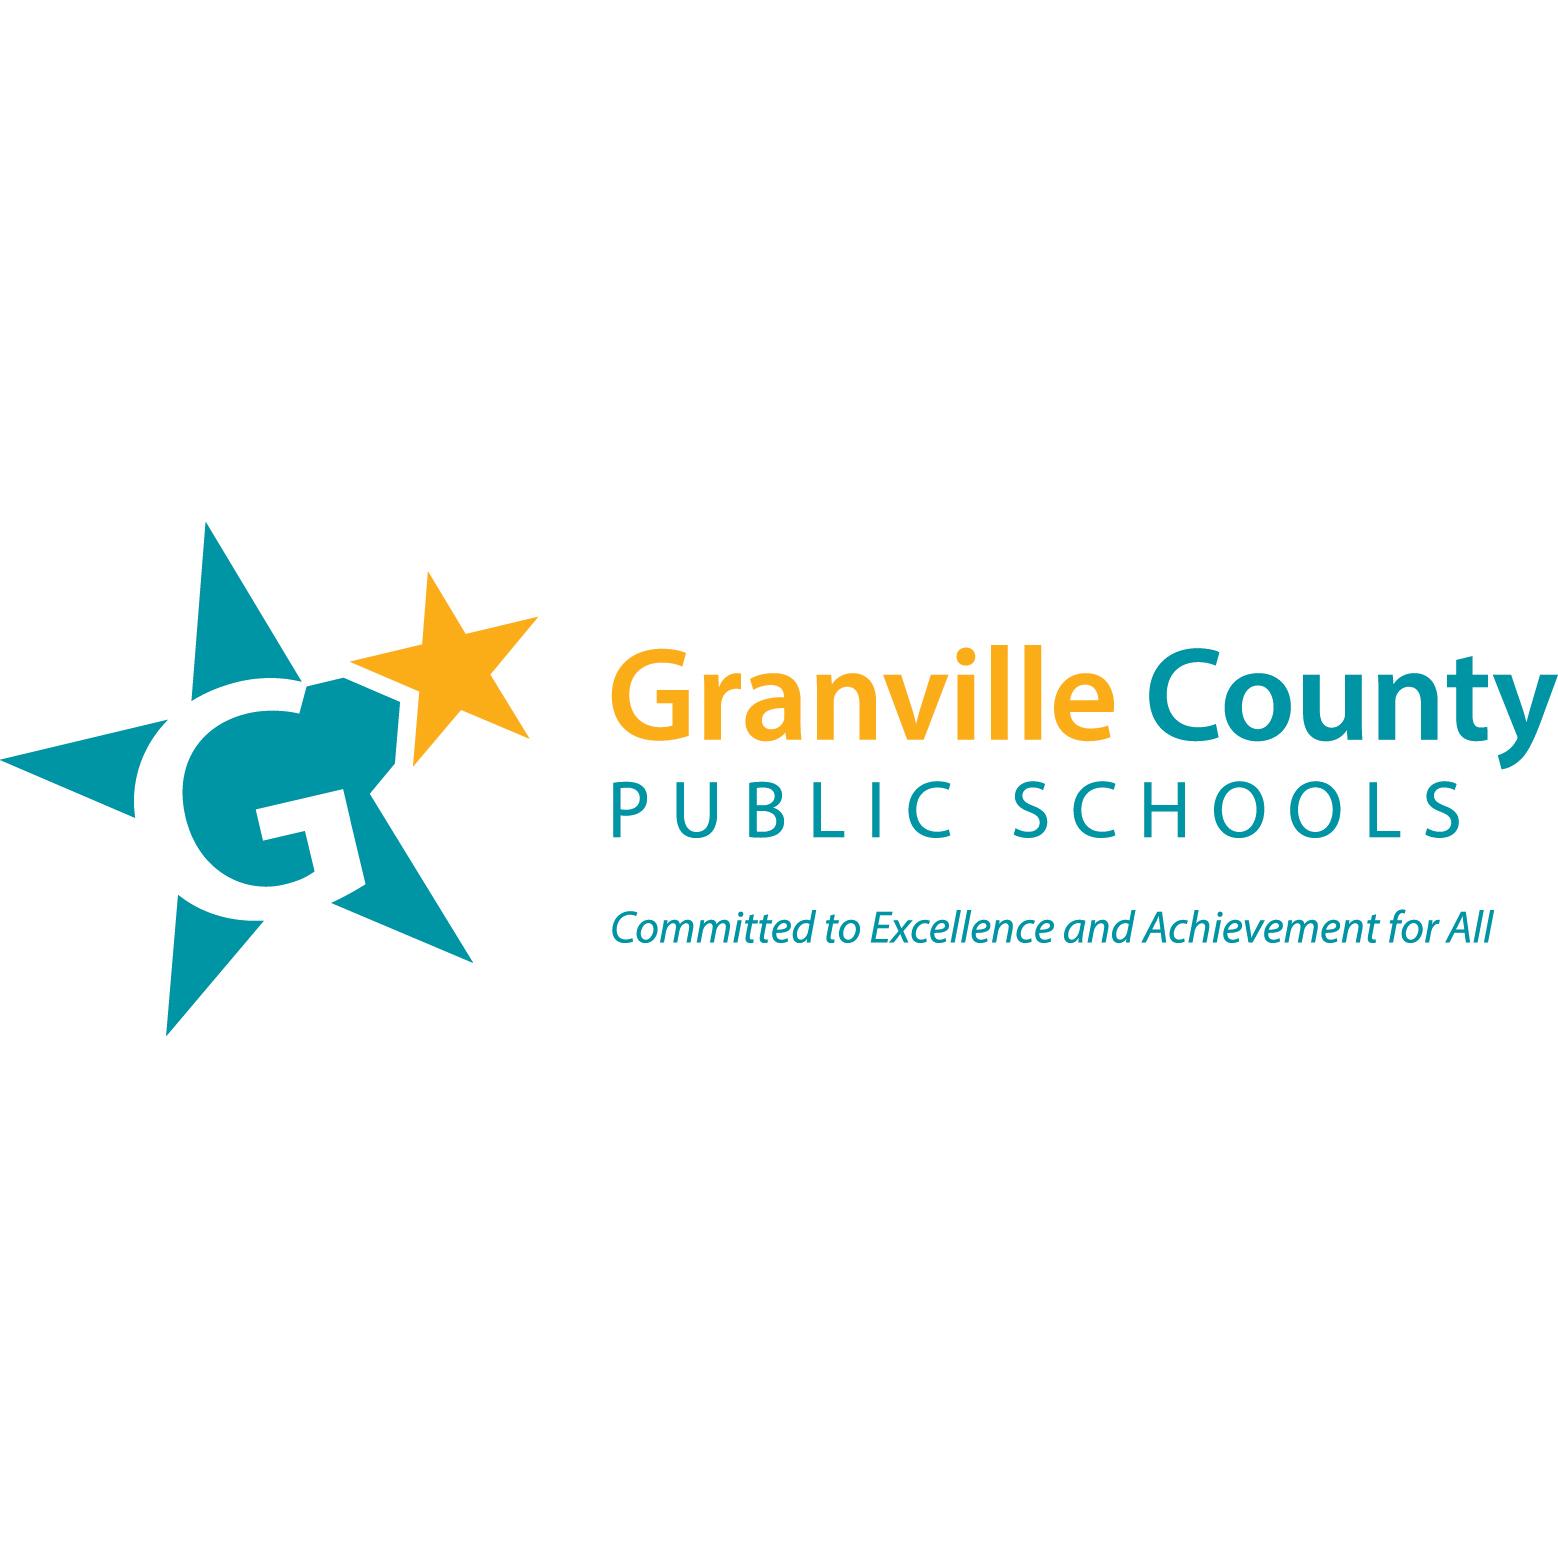 Granville County Public Schools